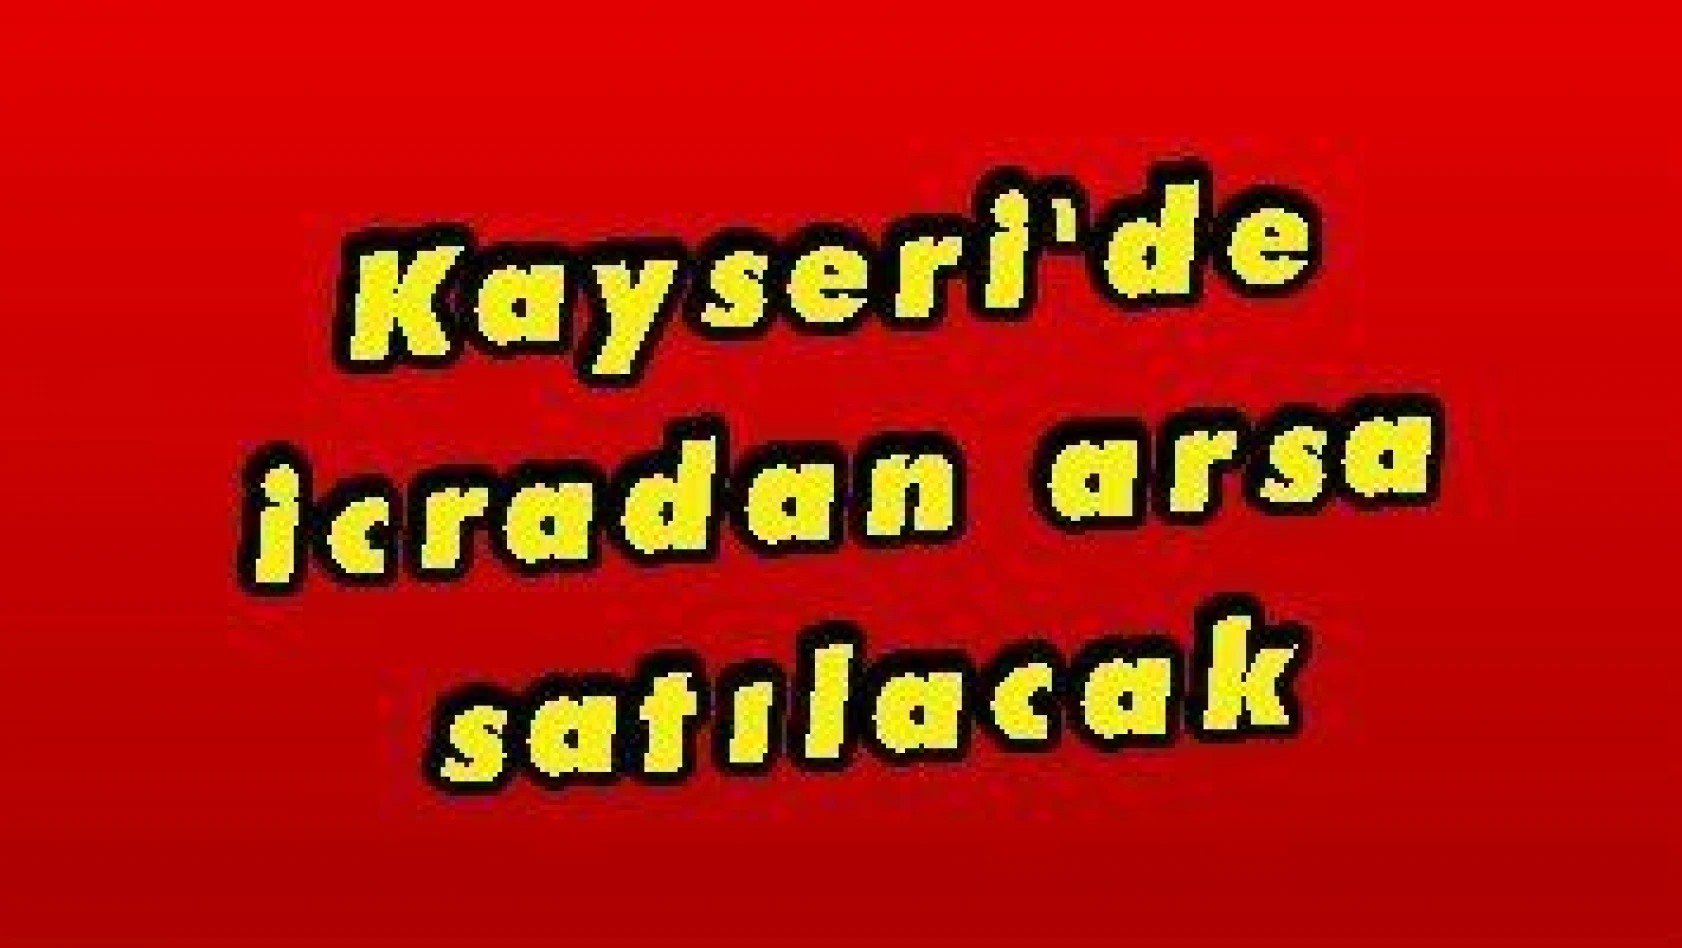 Kayseri'de icradan arsa satılacak